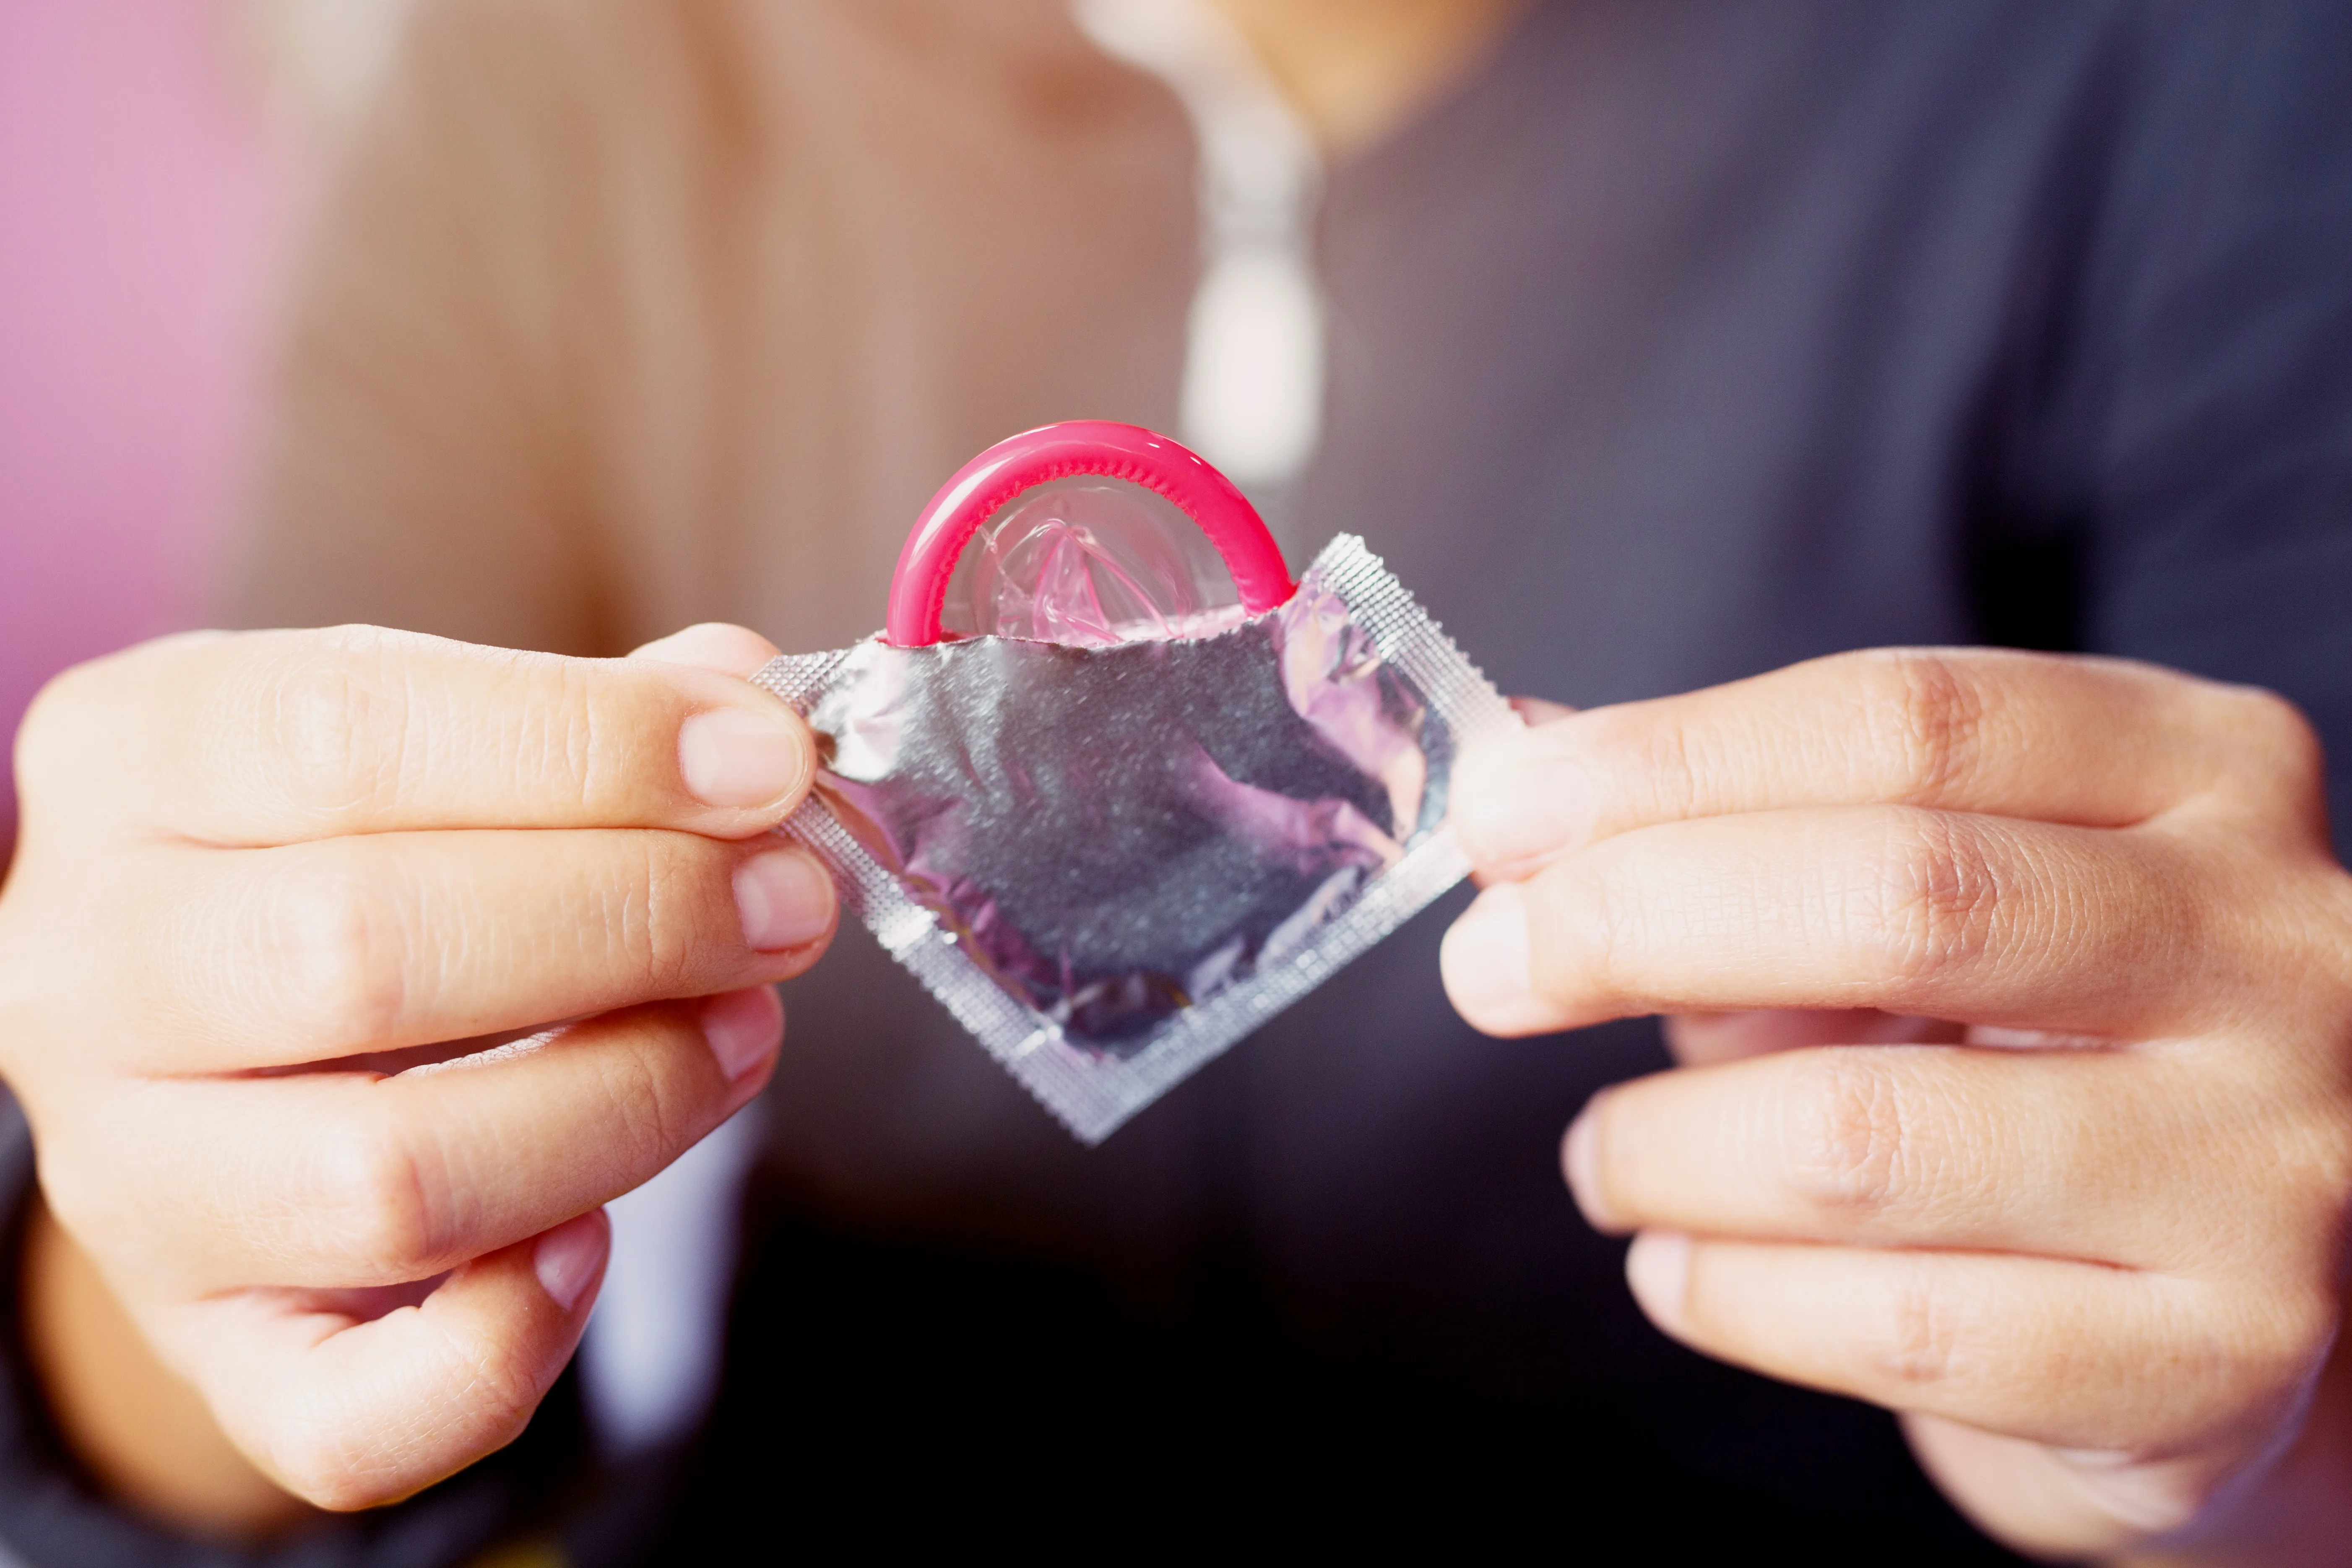 Не изучены и опасны: Гинеколог призвала остерегаться токсичных презервативов с Wildberries